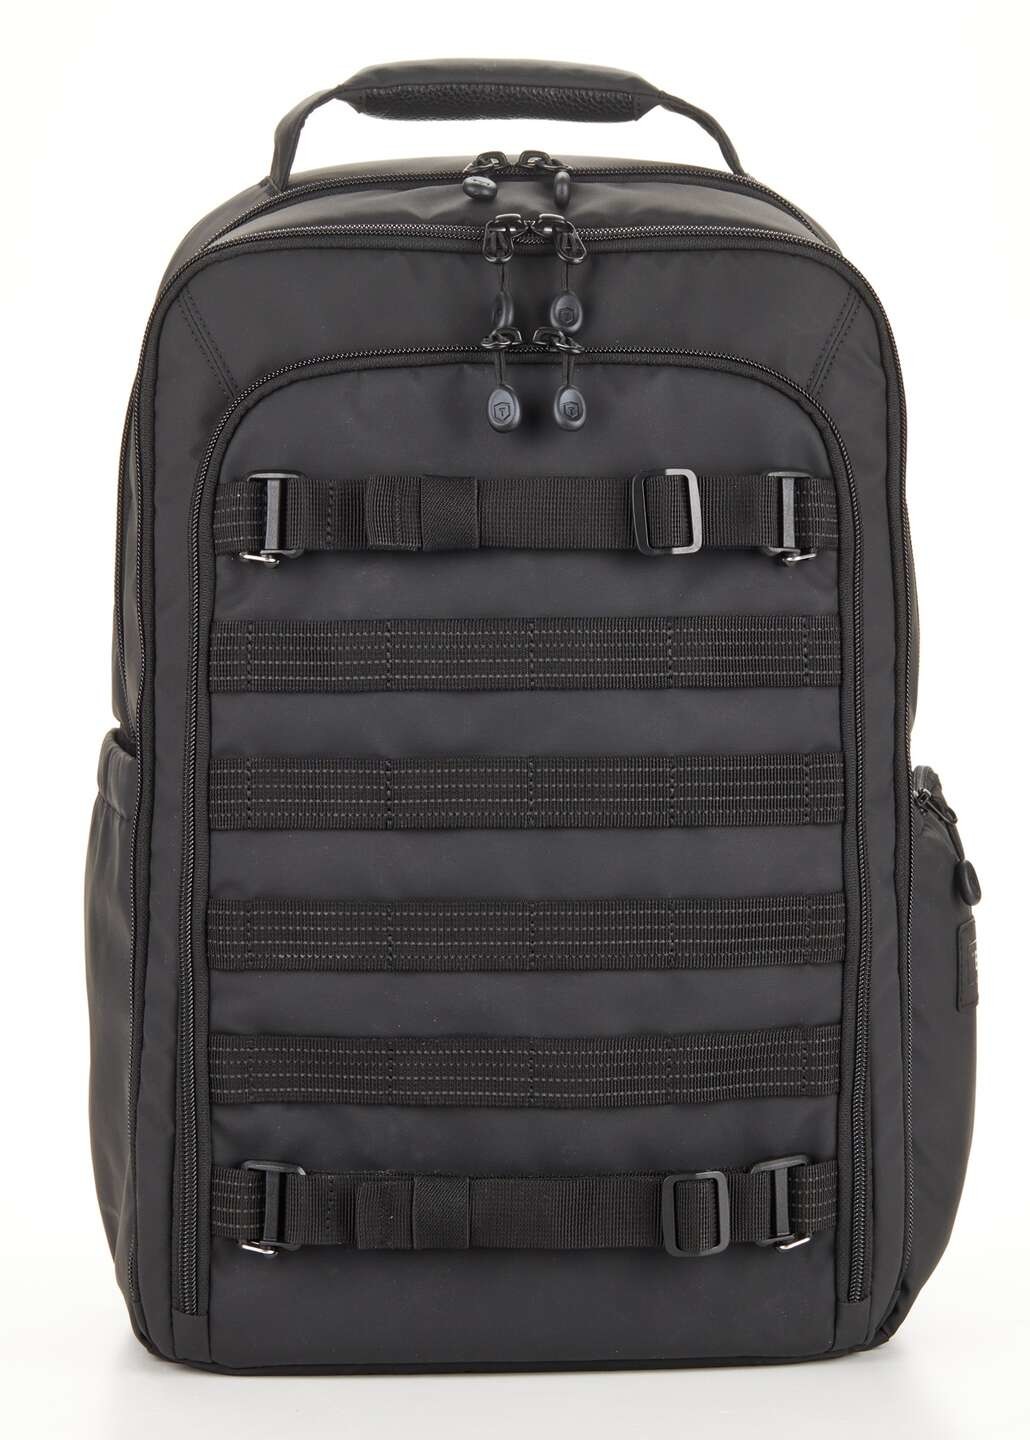 Tenba Axis v2 16L Road Warrior Backpack černý 637-764